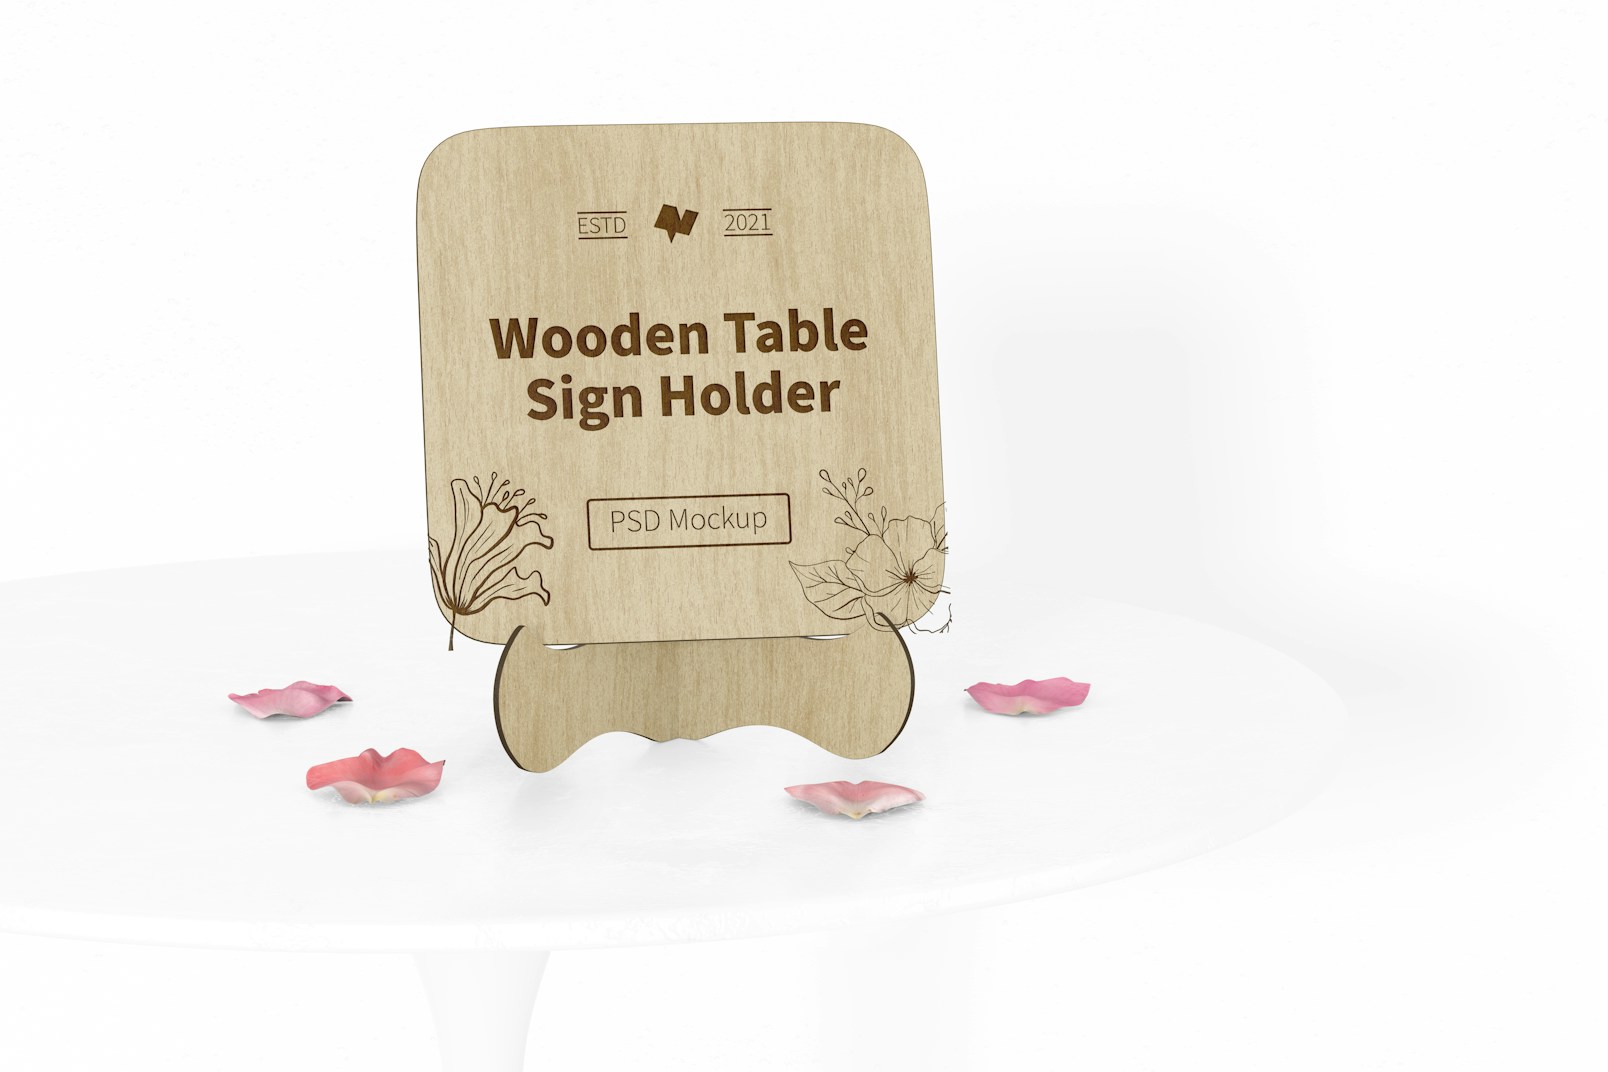 Wooden Table Sign Holder Mockup